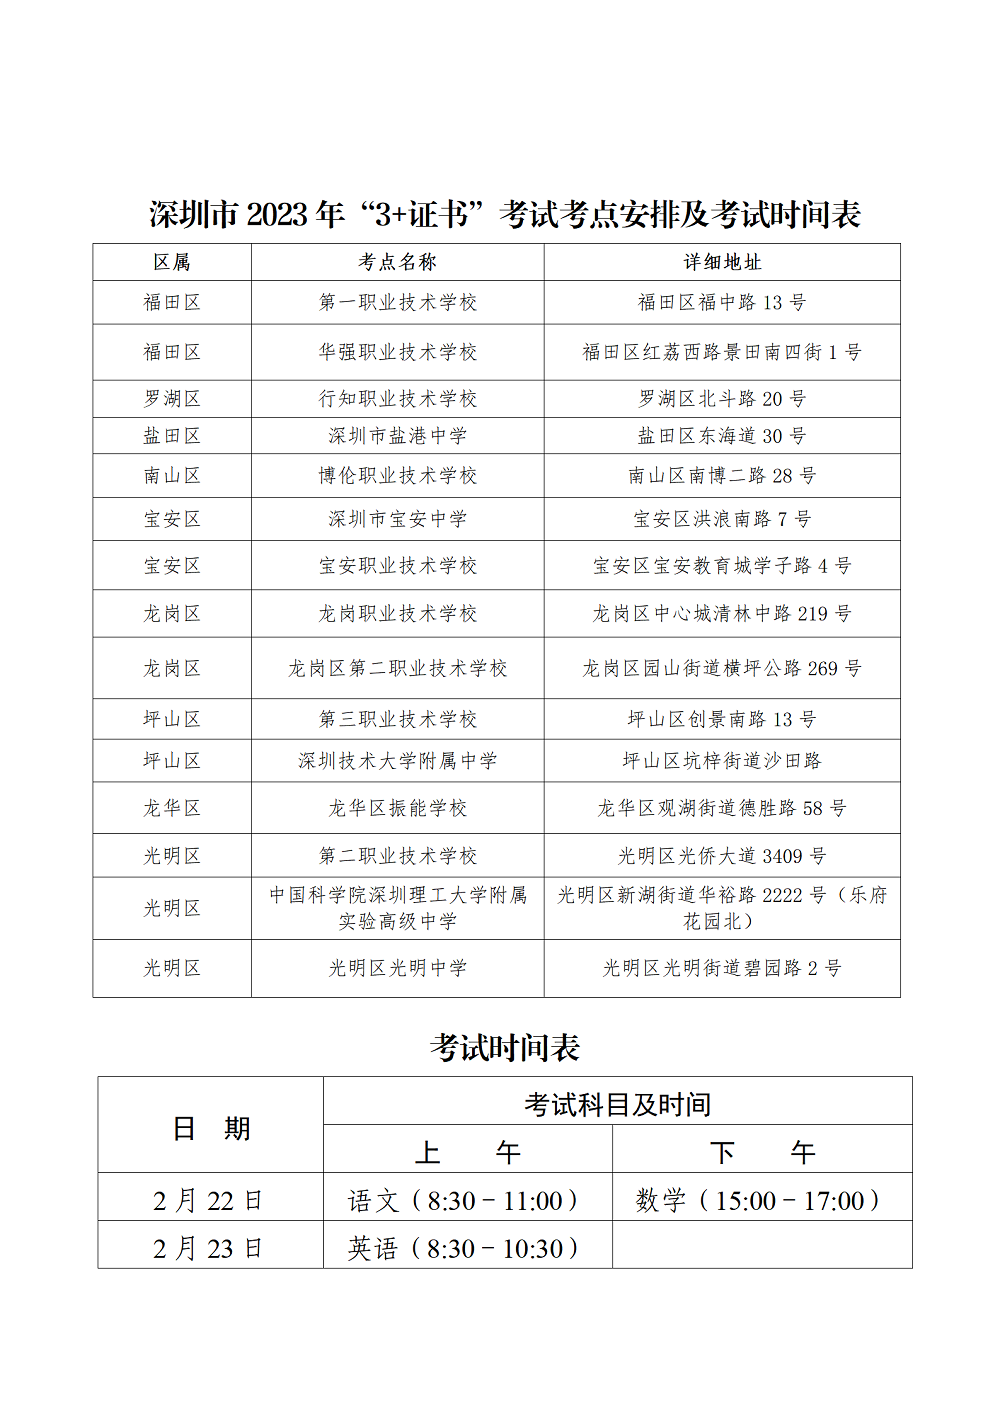 （通稿）2023年深圳市春季高考于2月22日-26日举行_07.png